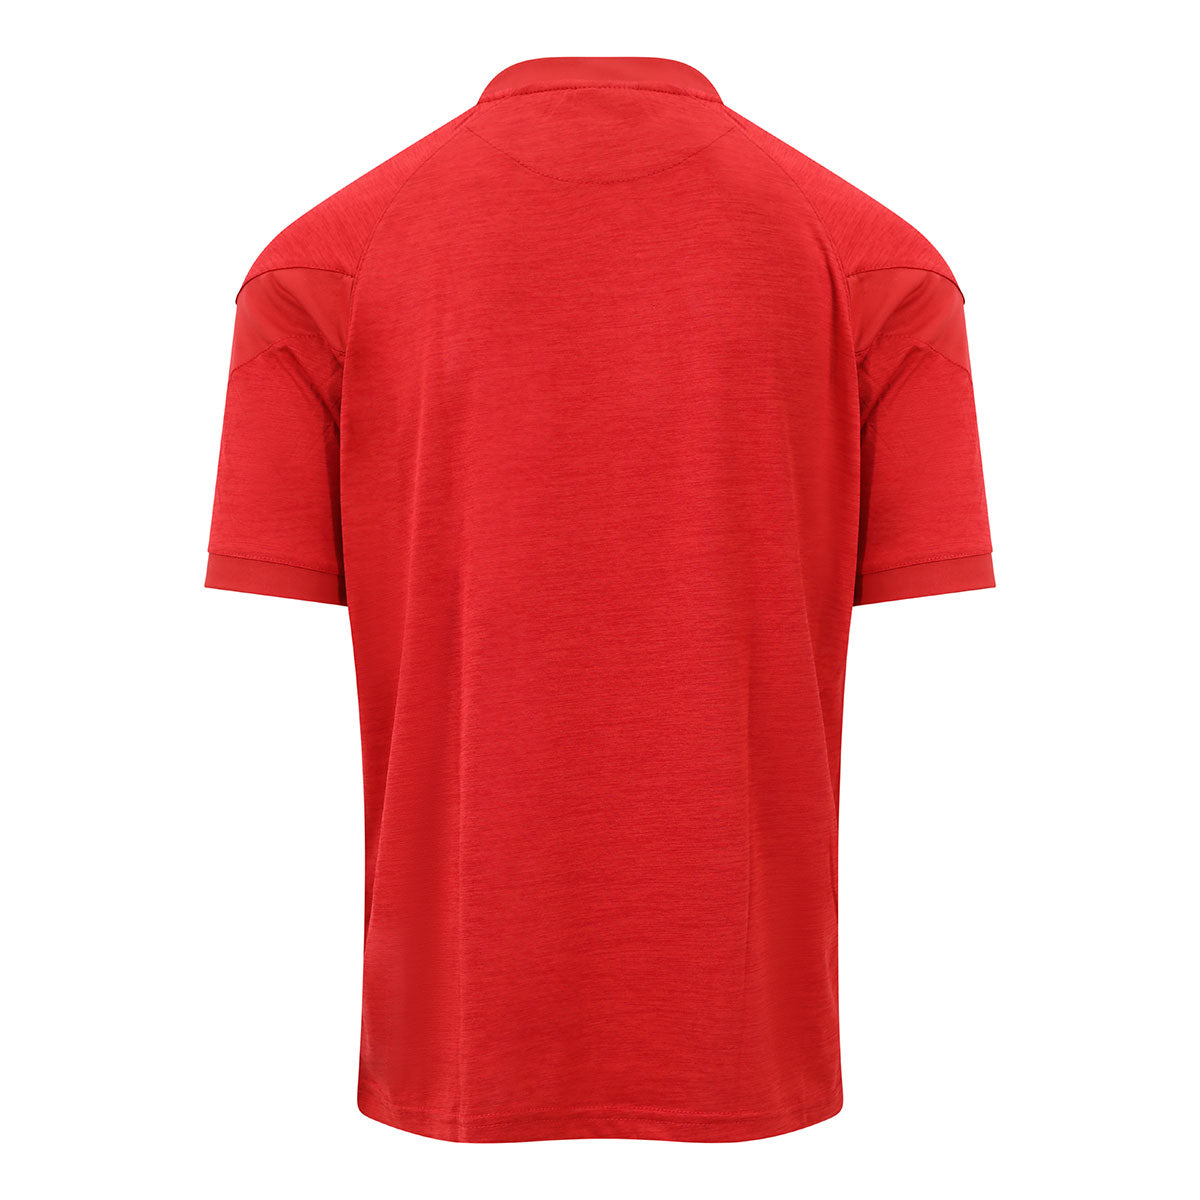 Mc Keever Tir na nOg GAA Core 22 T-Shirt - Youth - Red